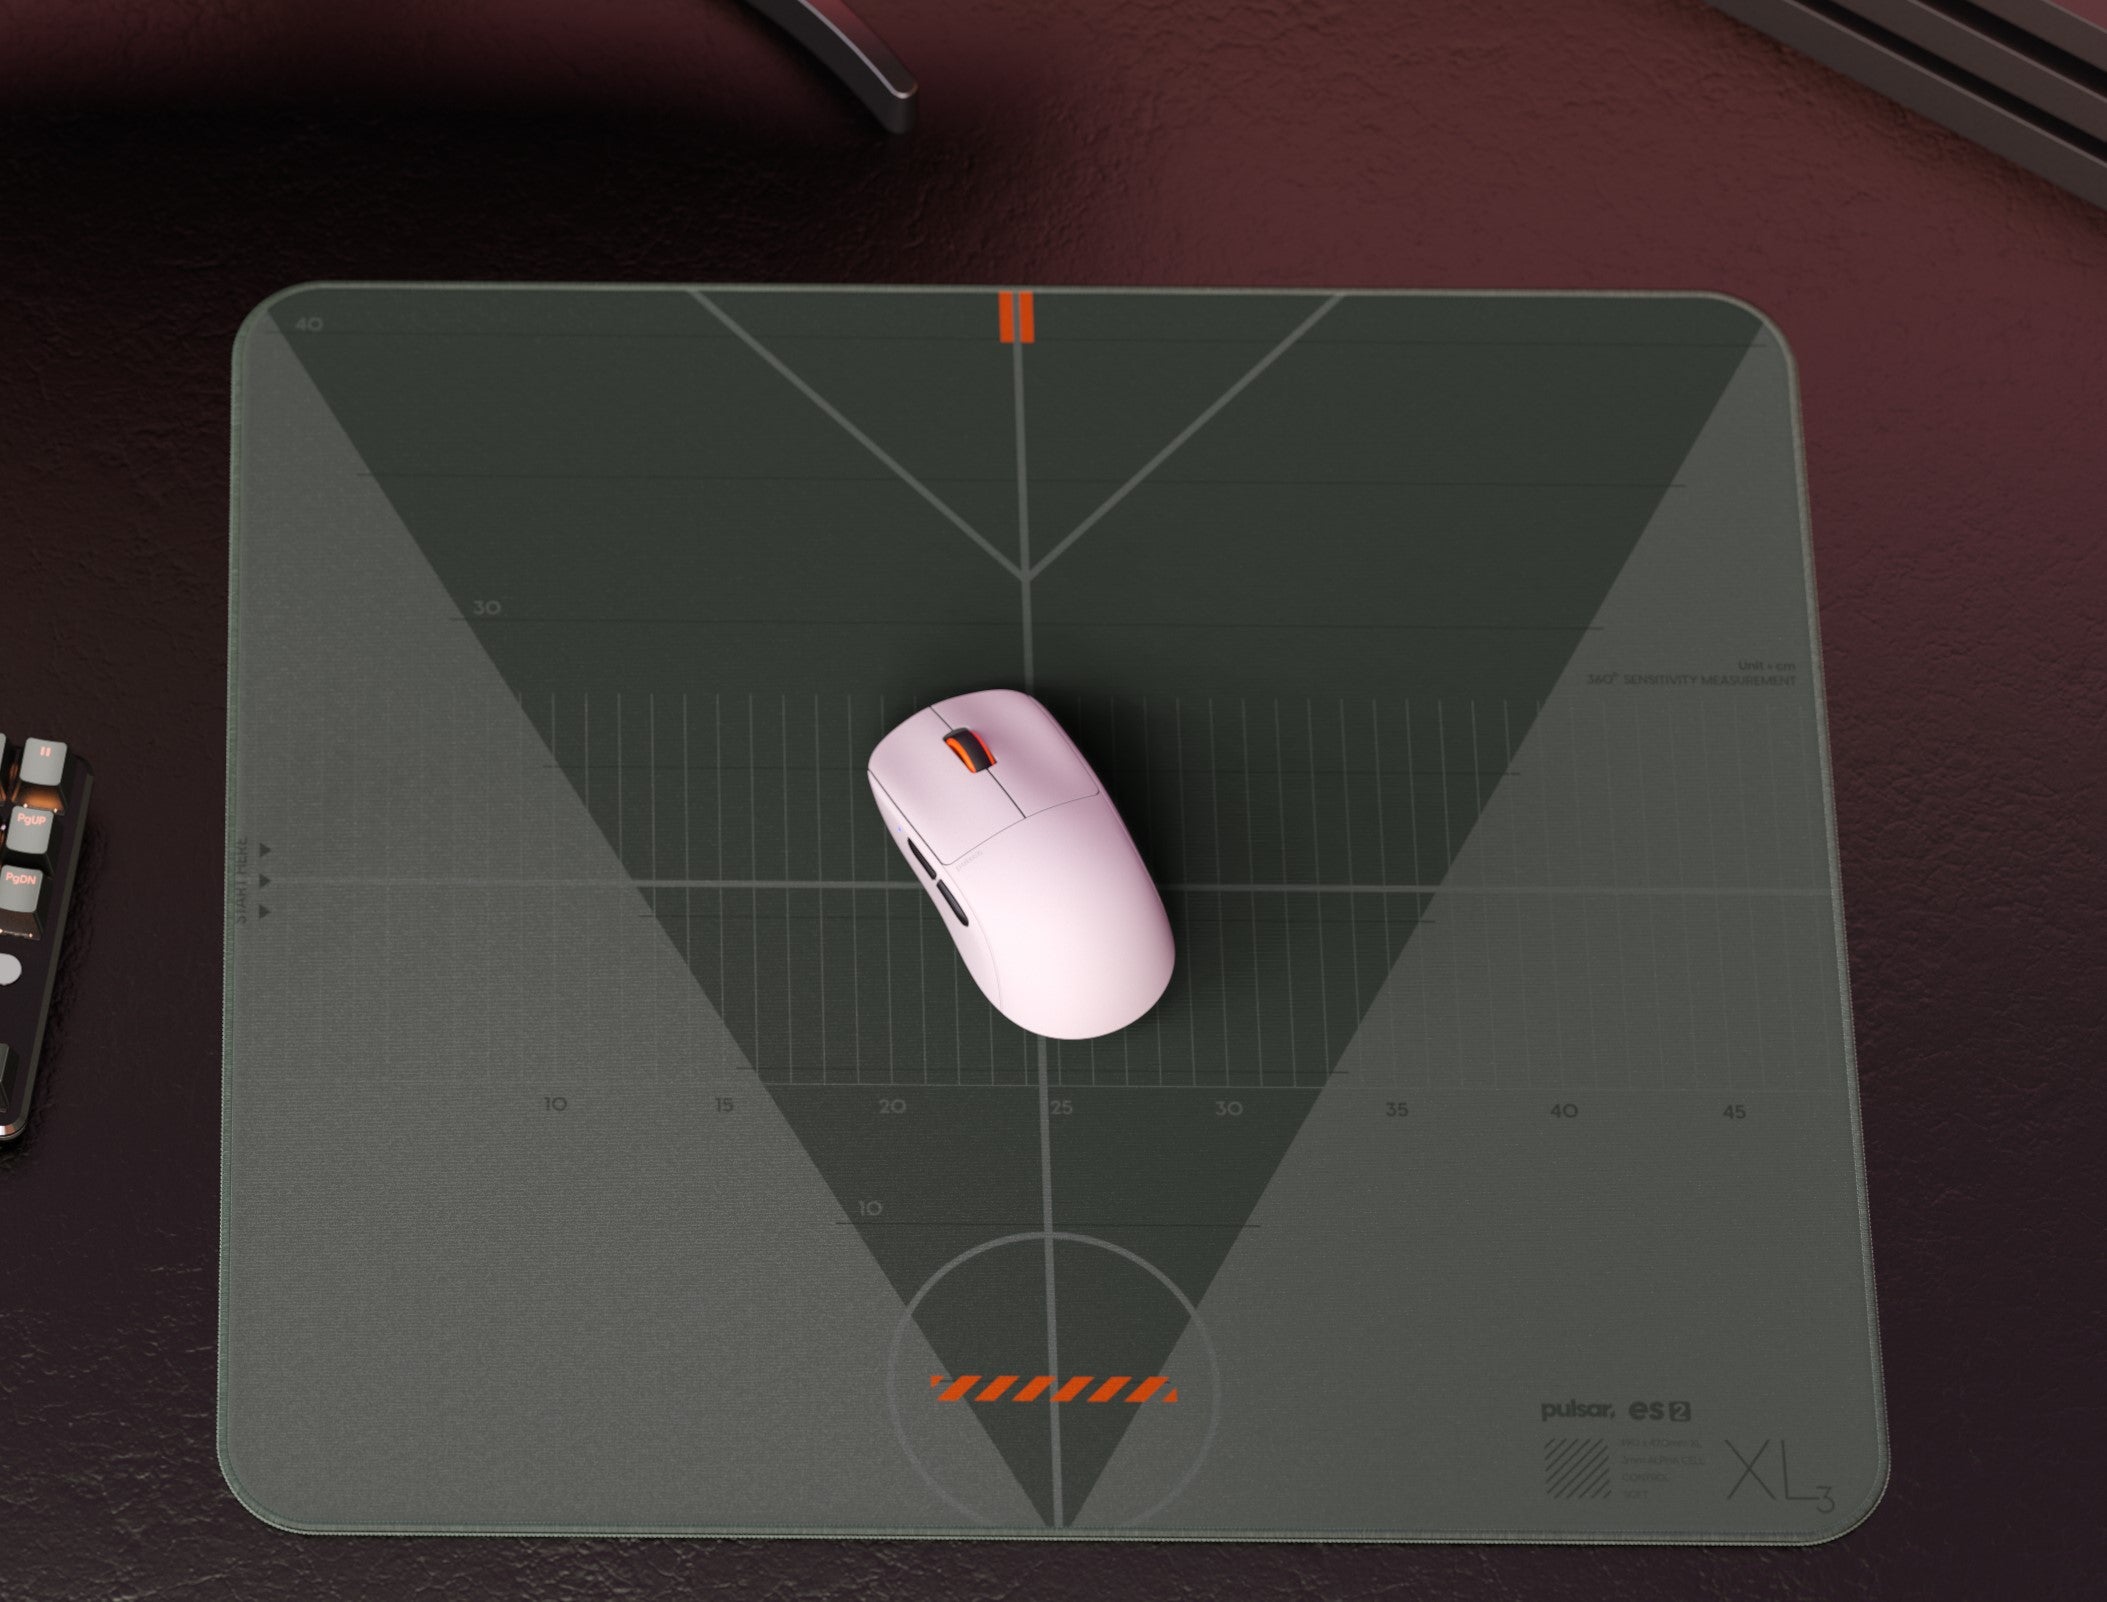 Pulsar ES2 eSports Mouse Pad - Black